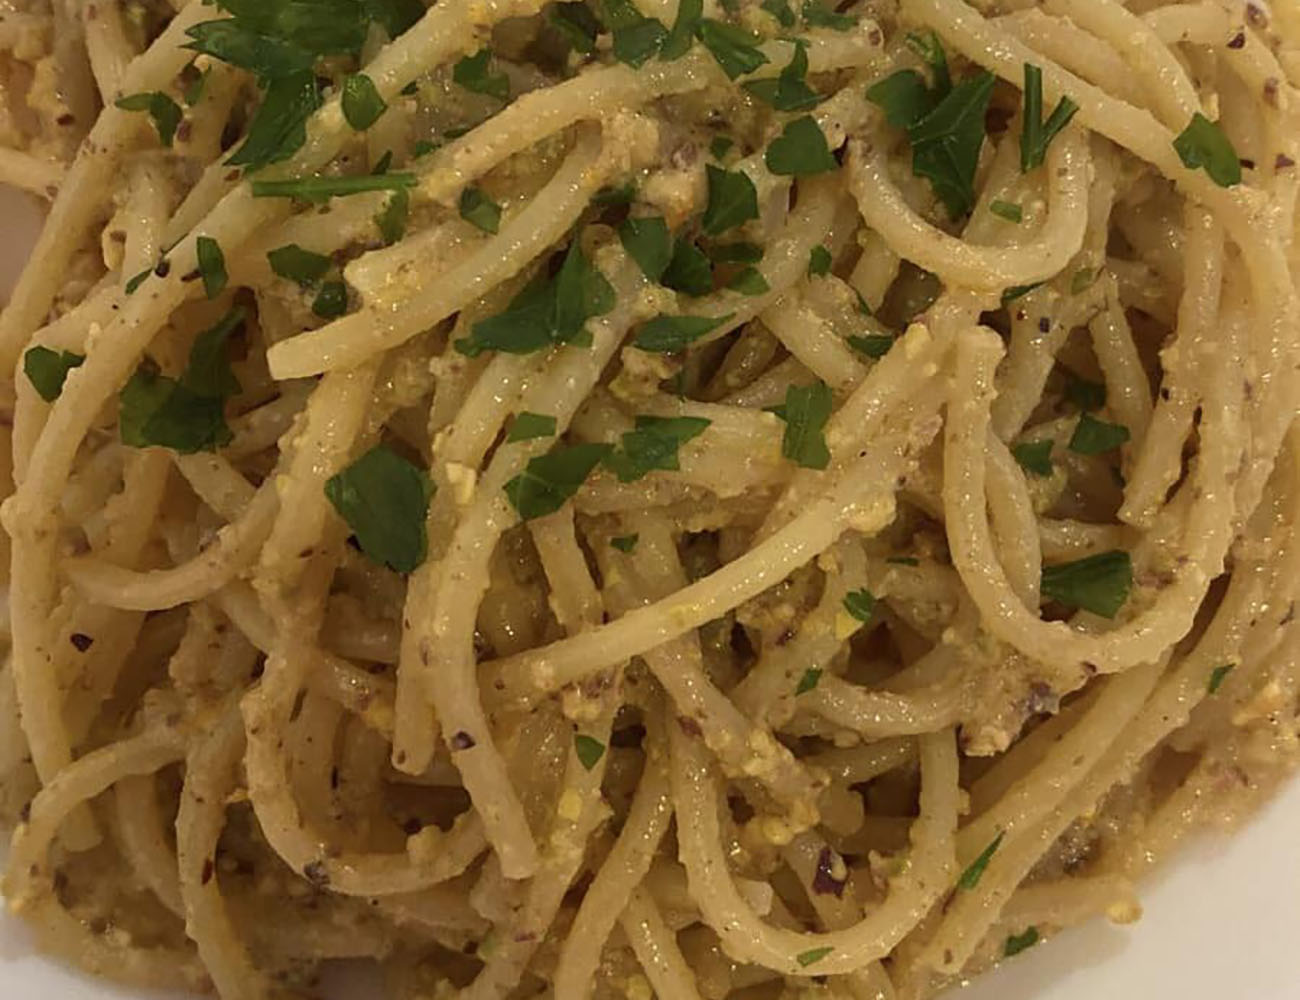 spaghetti-alla-moresca,-altro-che-aglio-e-olio.-la-ricetta-siciliana-buona-e-cremosa-con-il-trucco-del-succo-di-agrumi